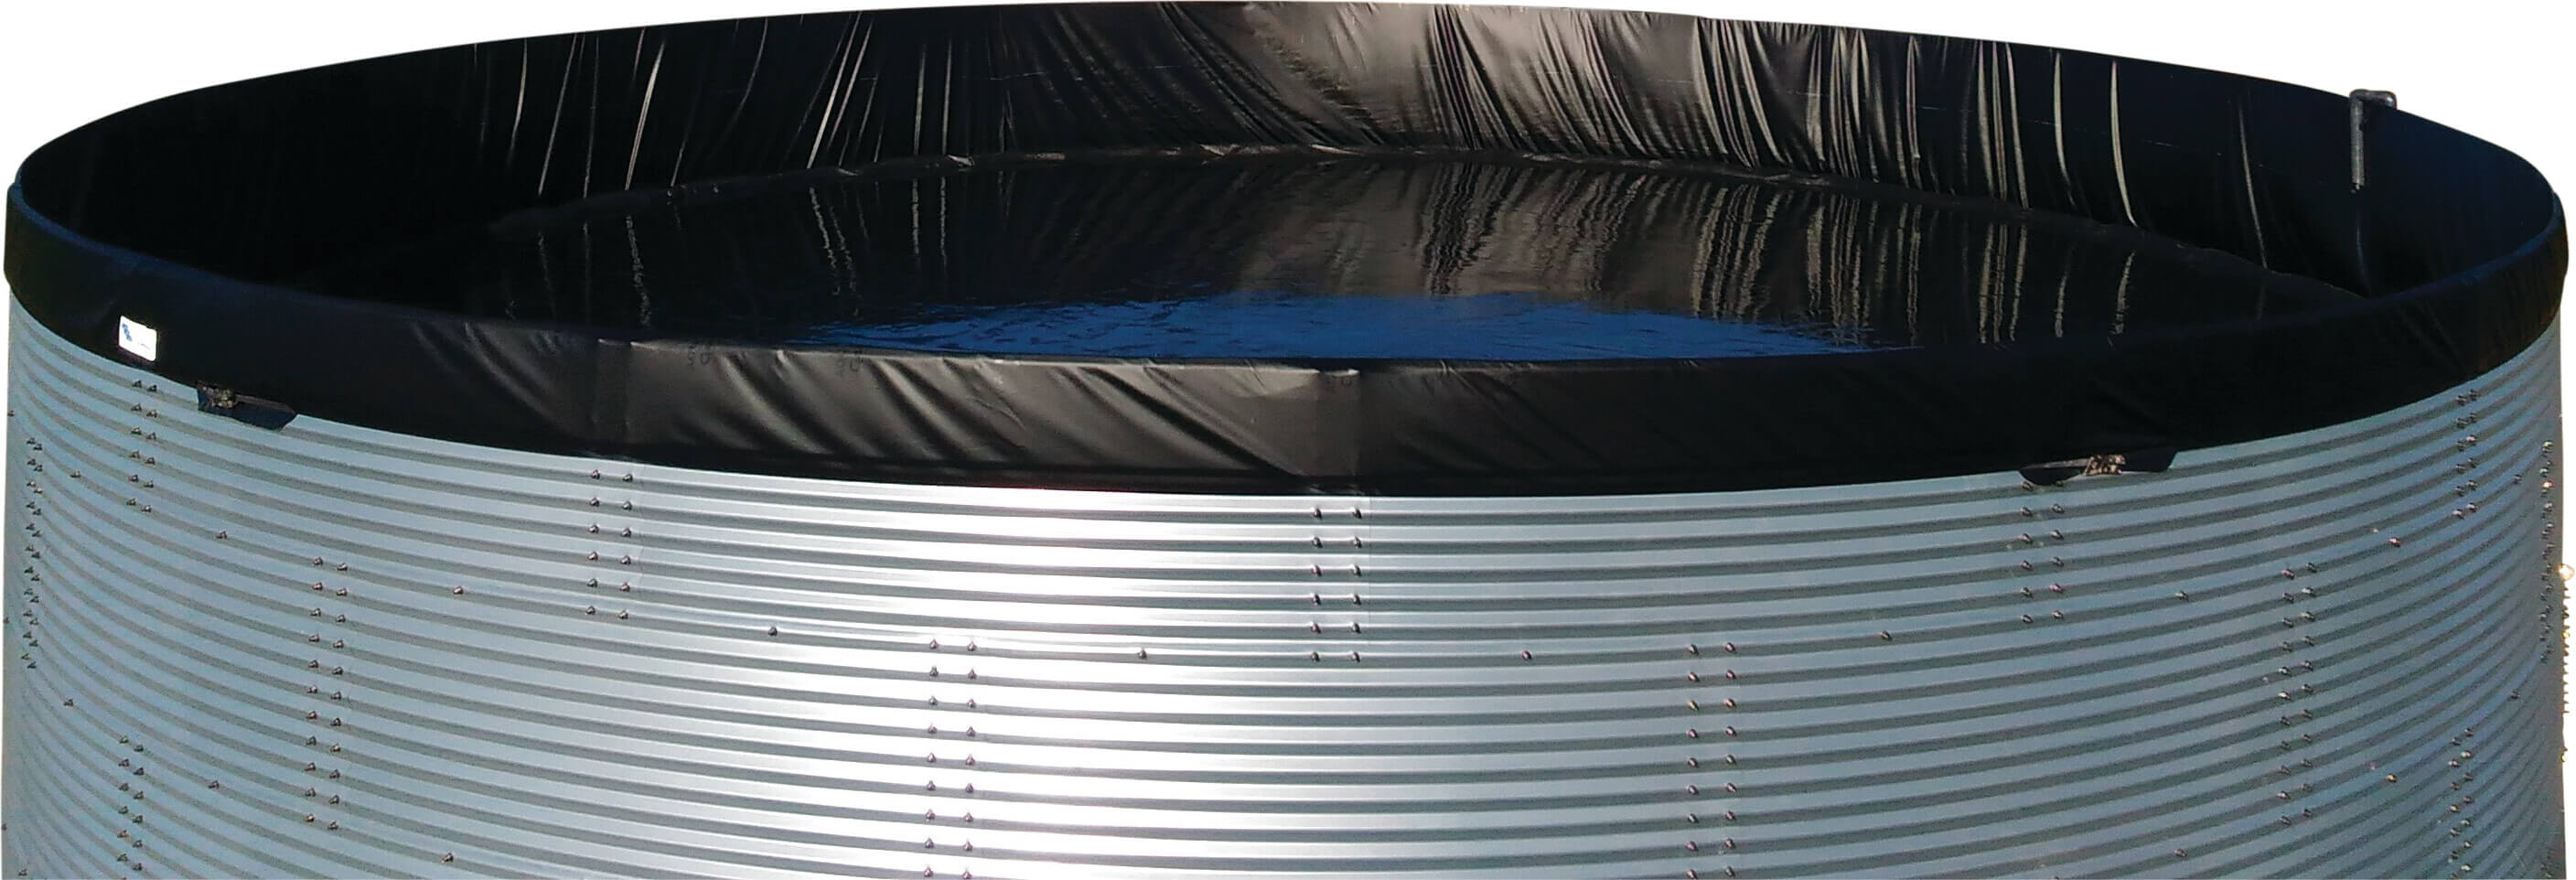 Wassertank Stahl 2000ltr type Aquaculture/WSWAVC 1.34 x 1.59m